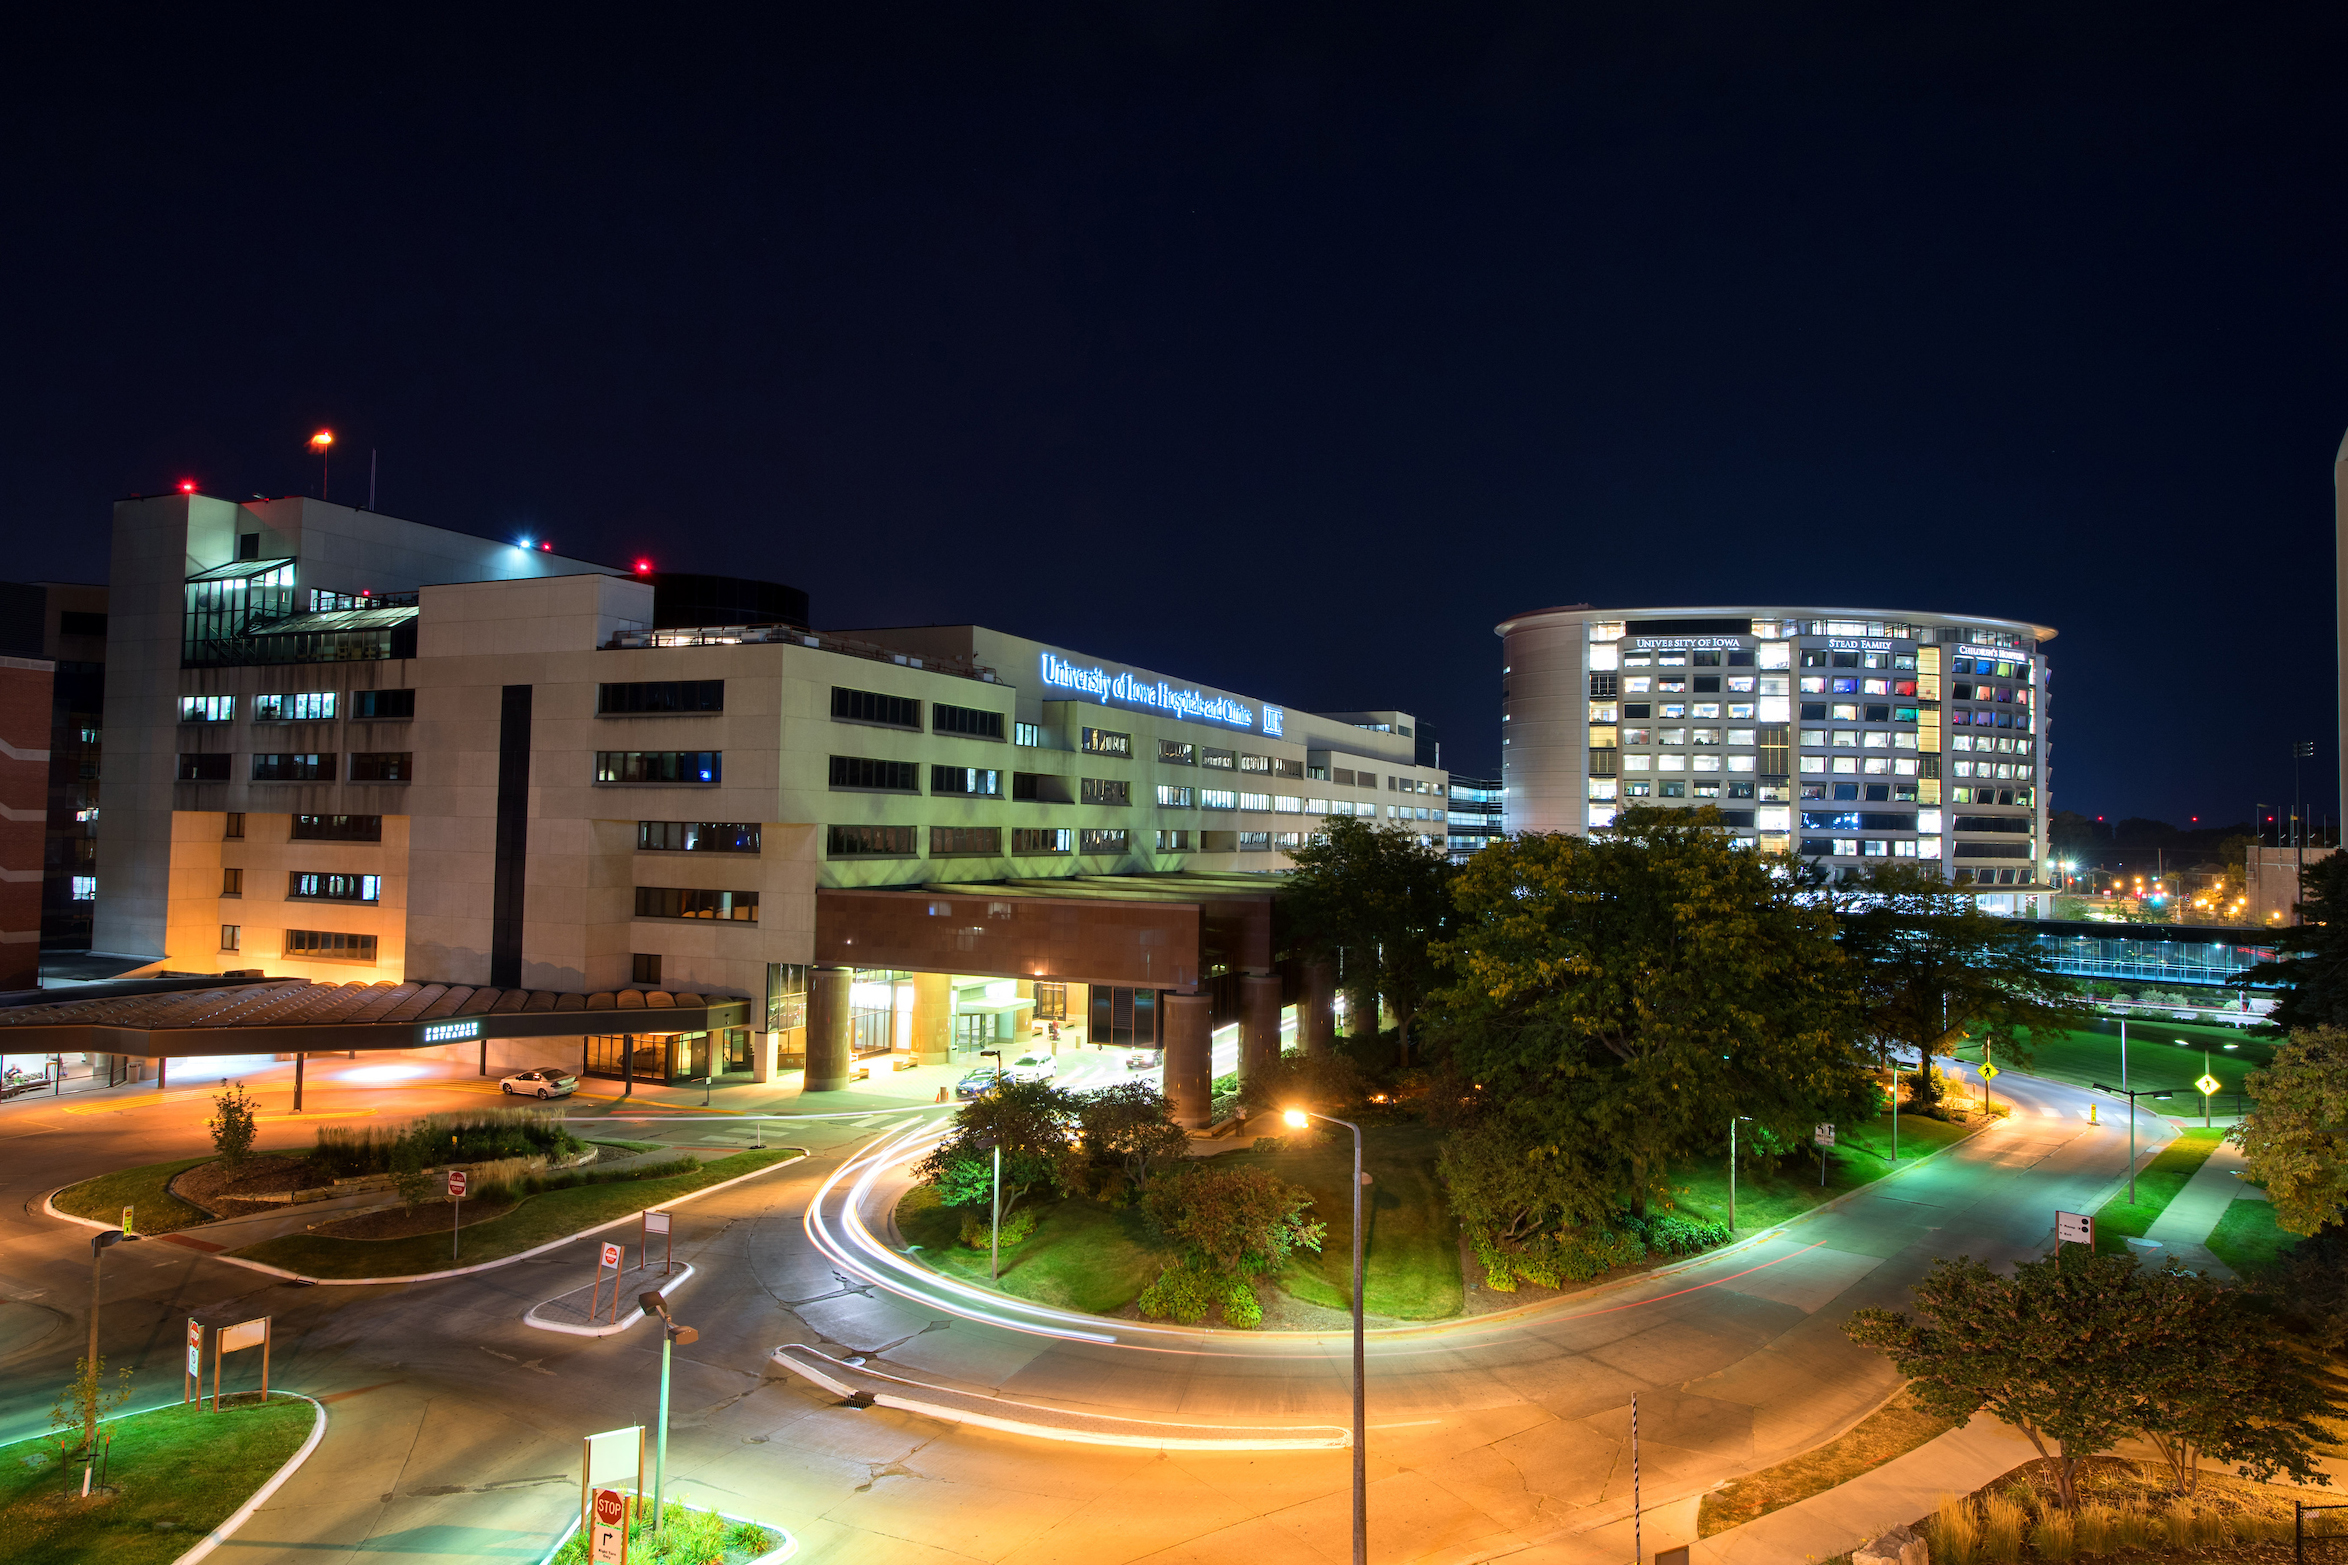 University of Iowa Hospitals & Clinics photo at night